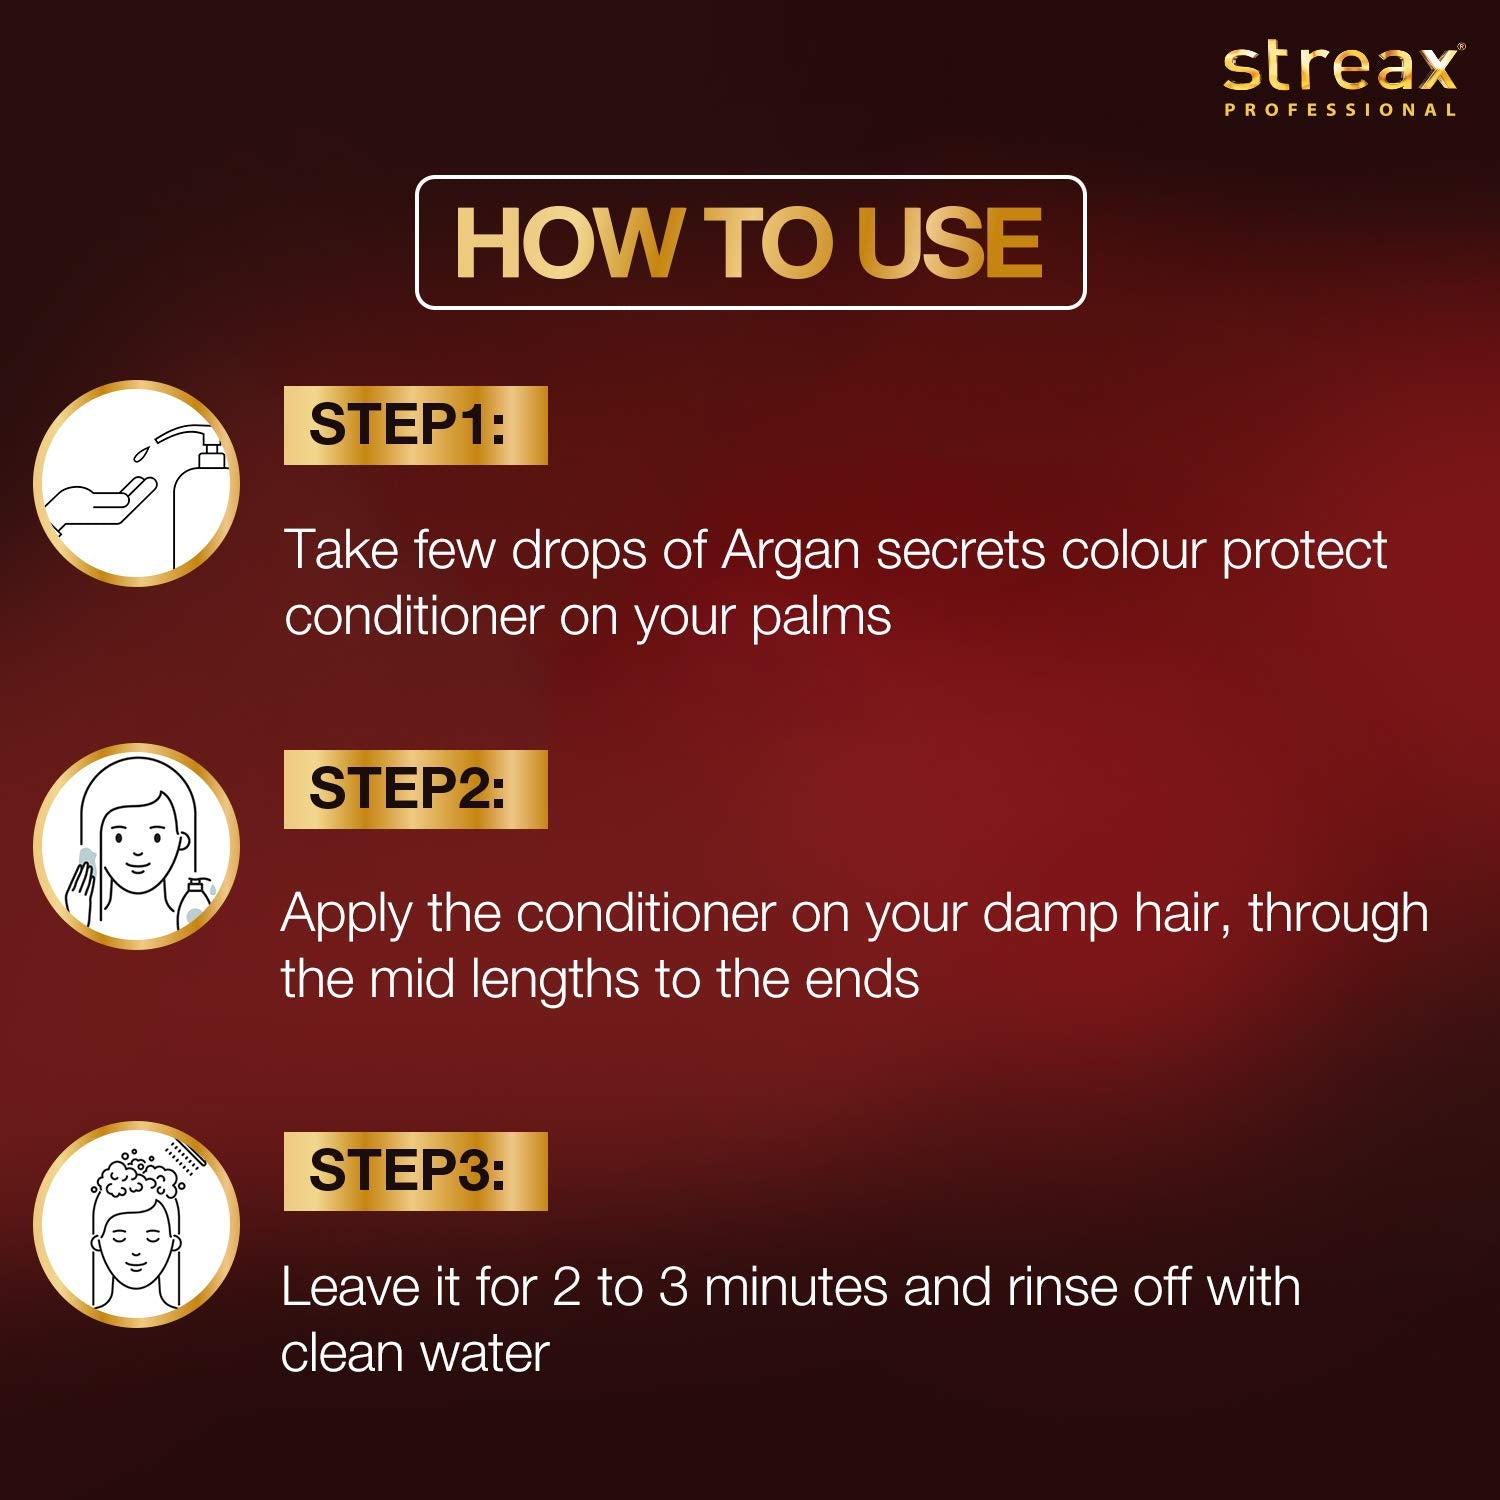 Streax Argan Secrets Color Protect Conditioner